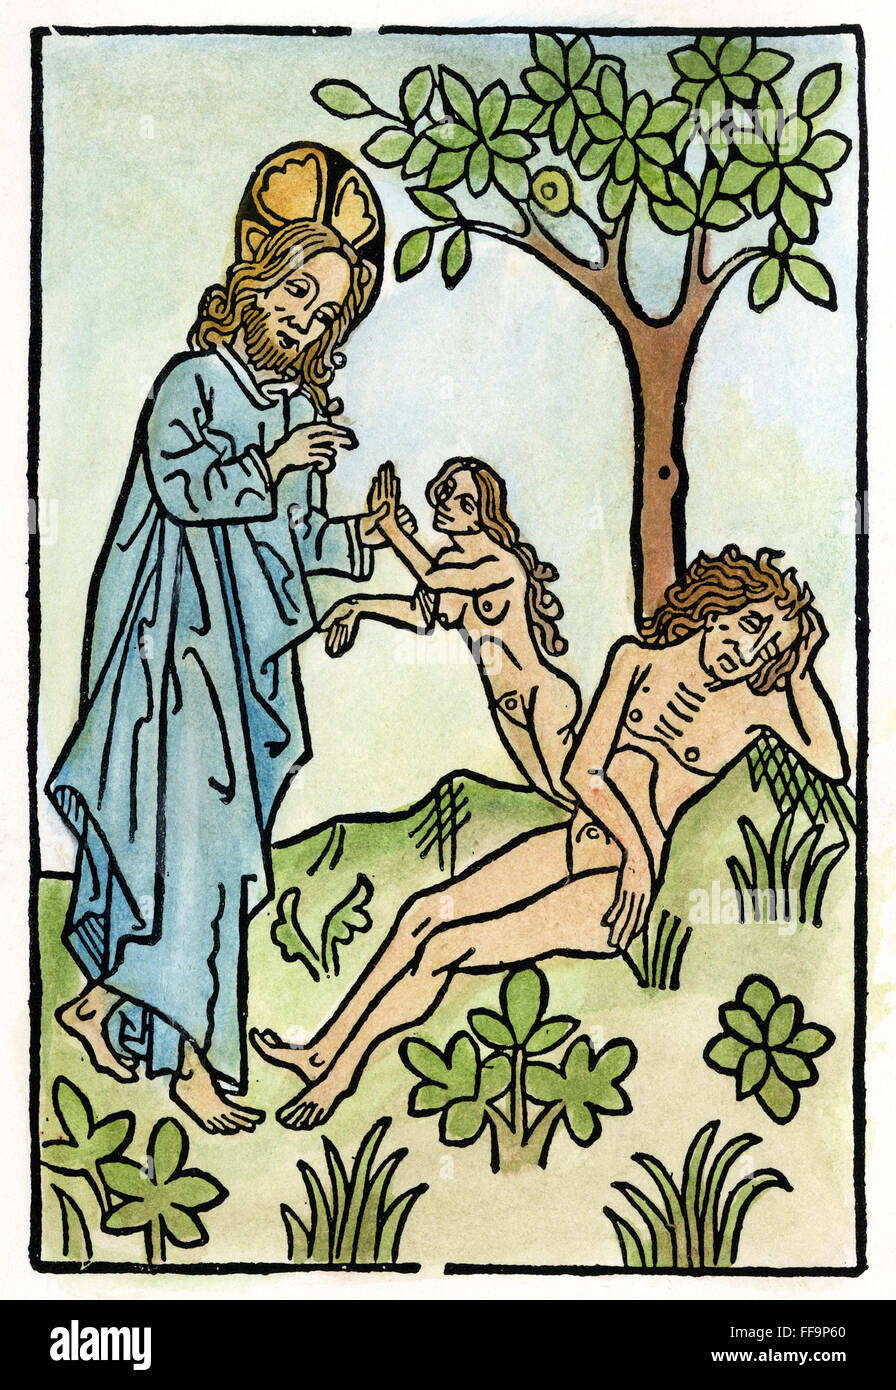 Adán y Eva. /Ongd la creación de Eva de la costilla de Adán como él duerme bajo el árbol del conocimiento. Xilografía, del siglo XV. Foto de stock